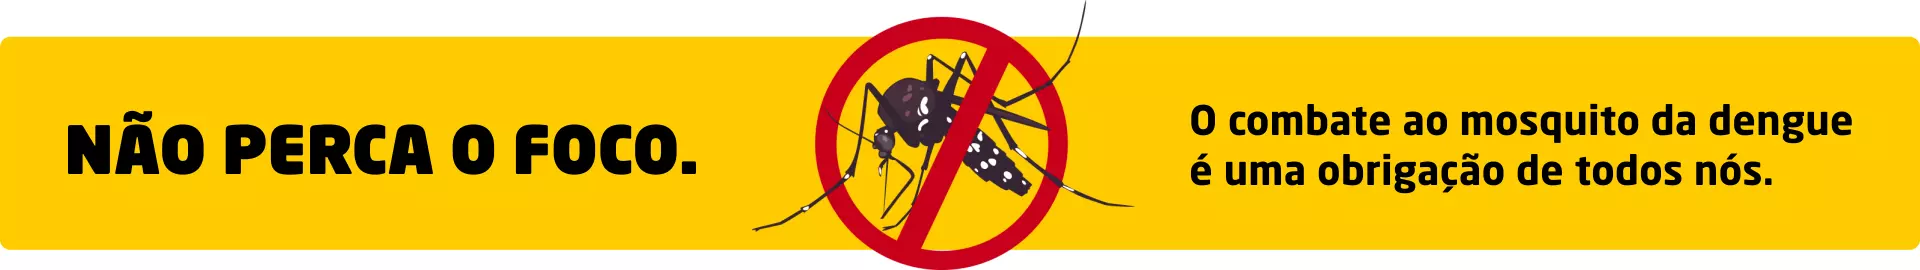 O combate ao mosquito da dengue é uma obrigação de todos nós.